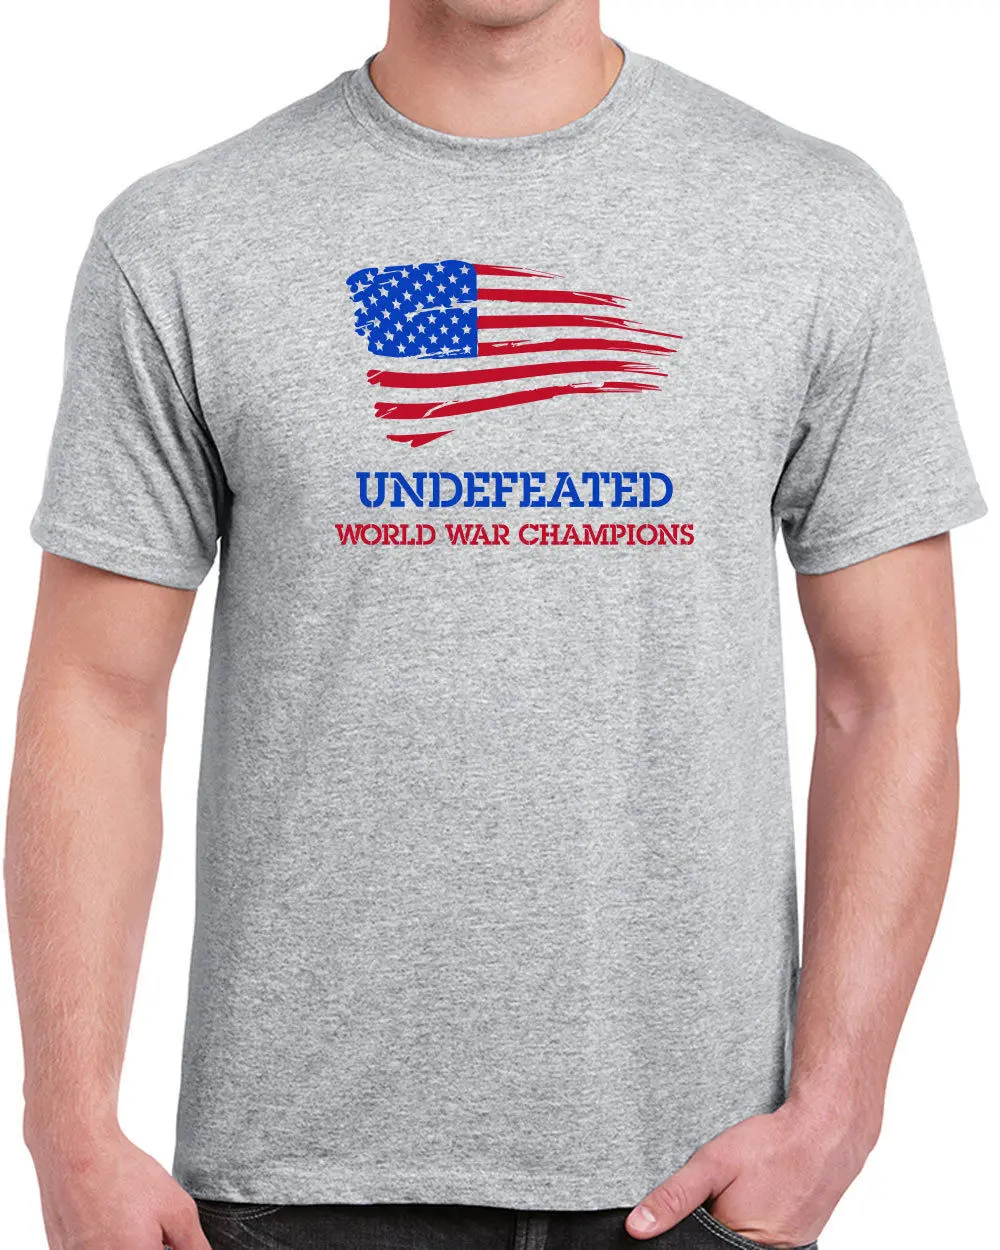 197 Undefeated World War Champs Мужская футболка Америка забавная гордость все размеры/Цвет Лето Мужская мода футболка, удобная футболка